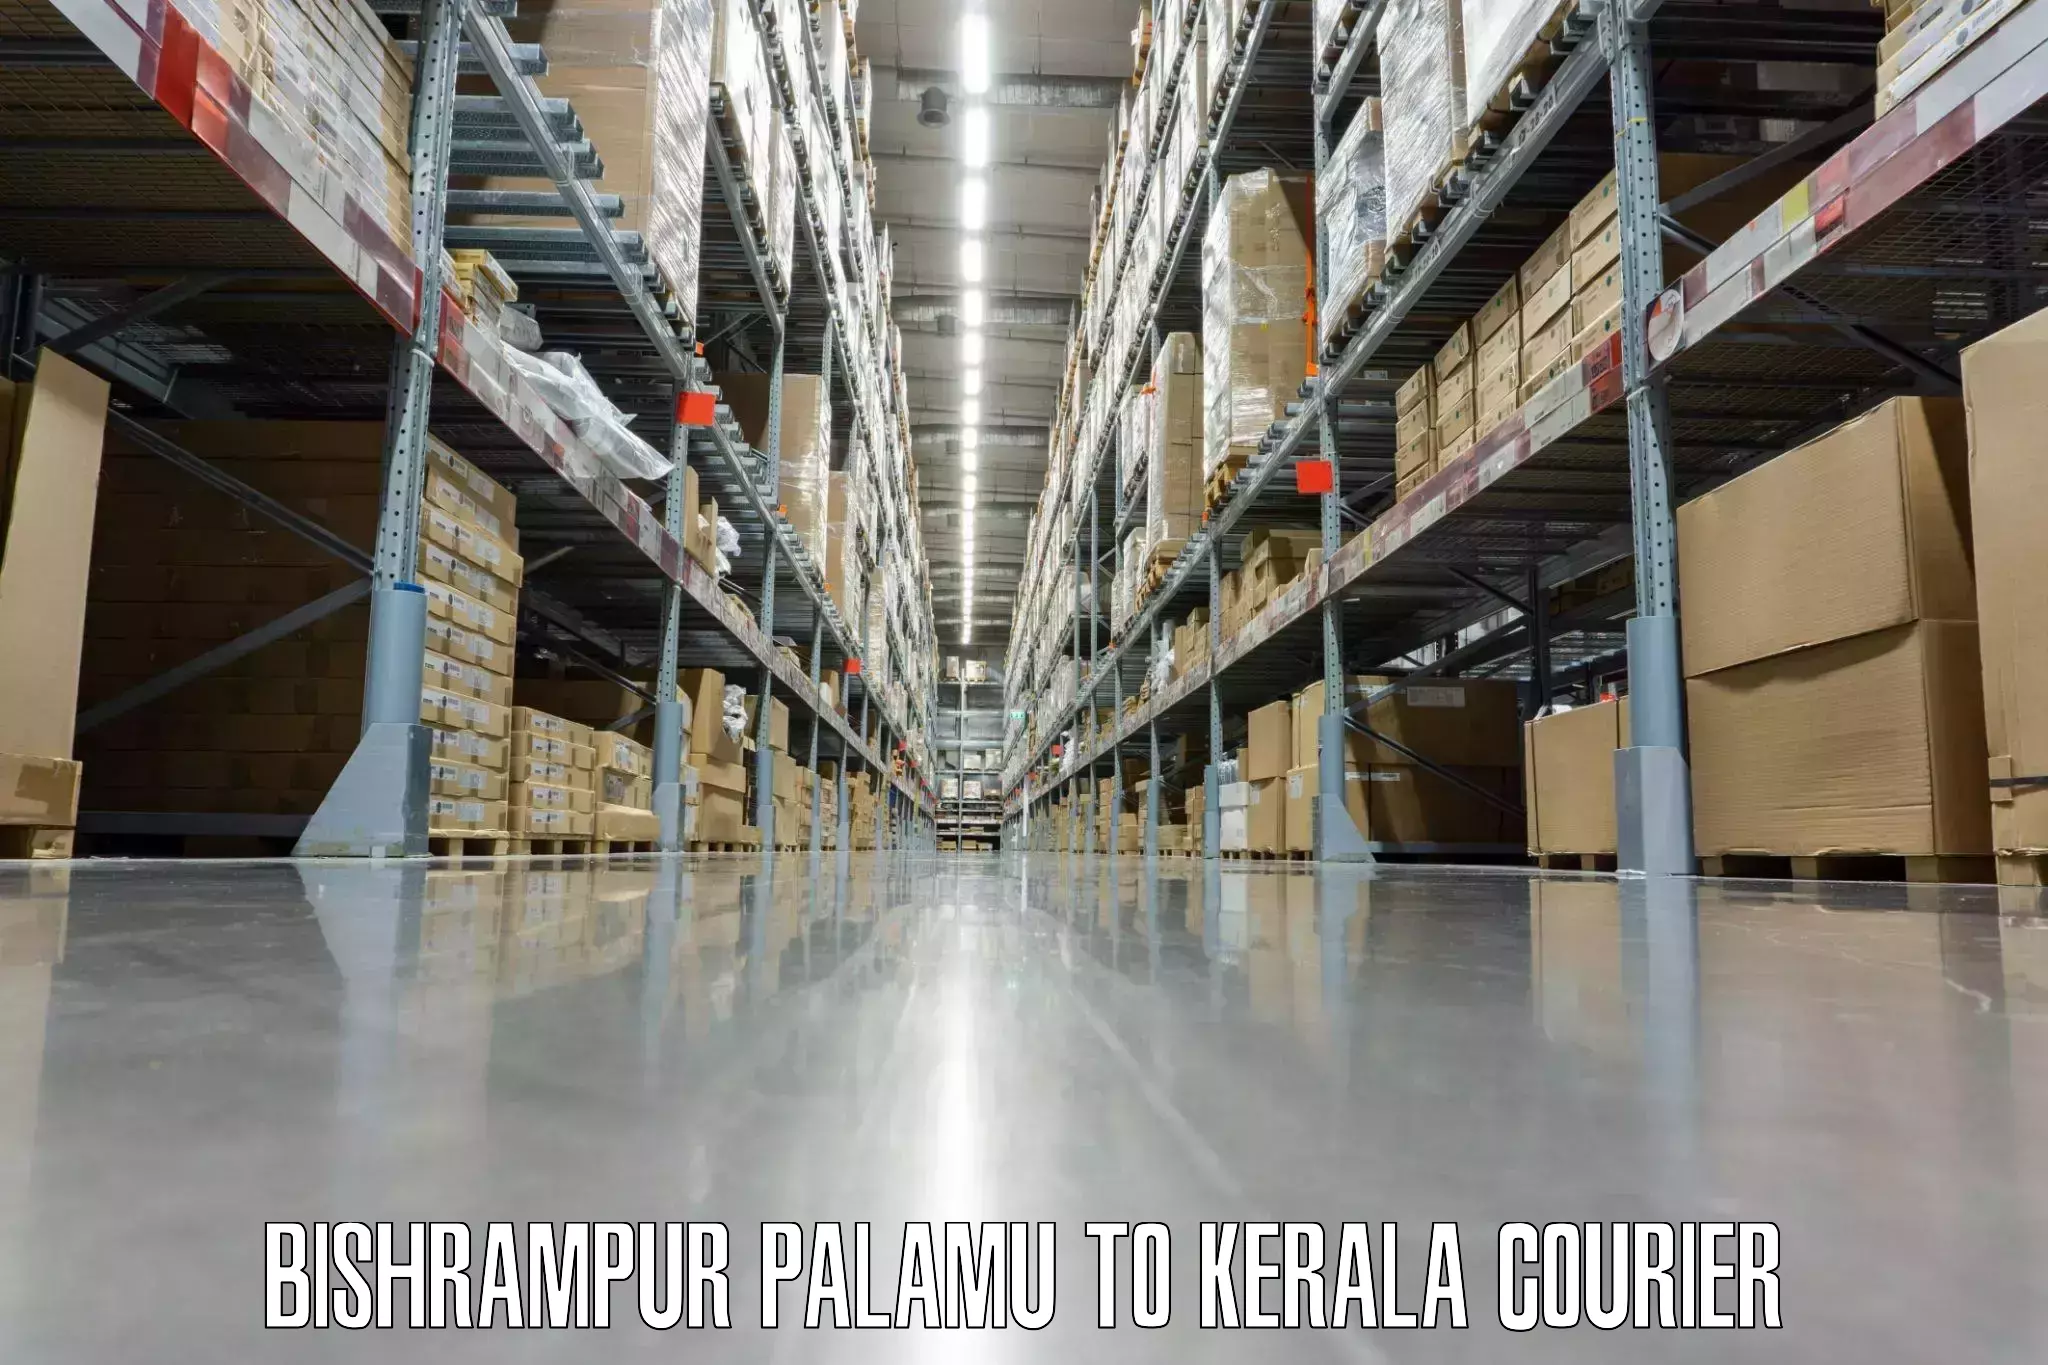 Versatile luggage courier Bishrampur Palamu to Kerala